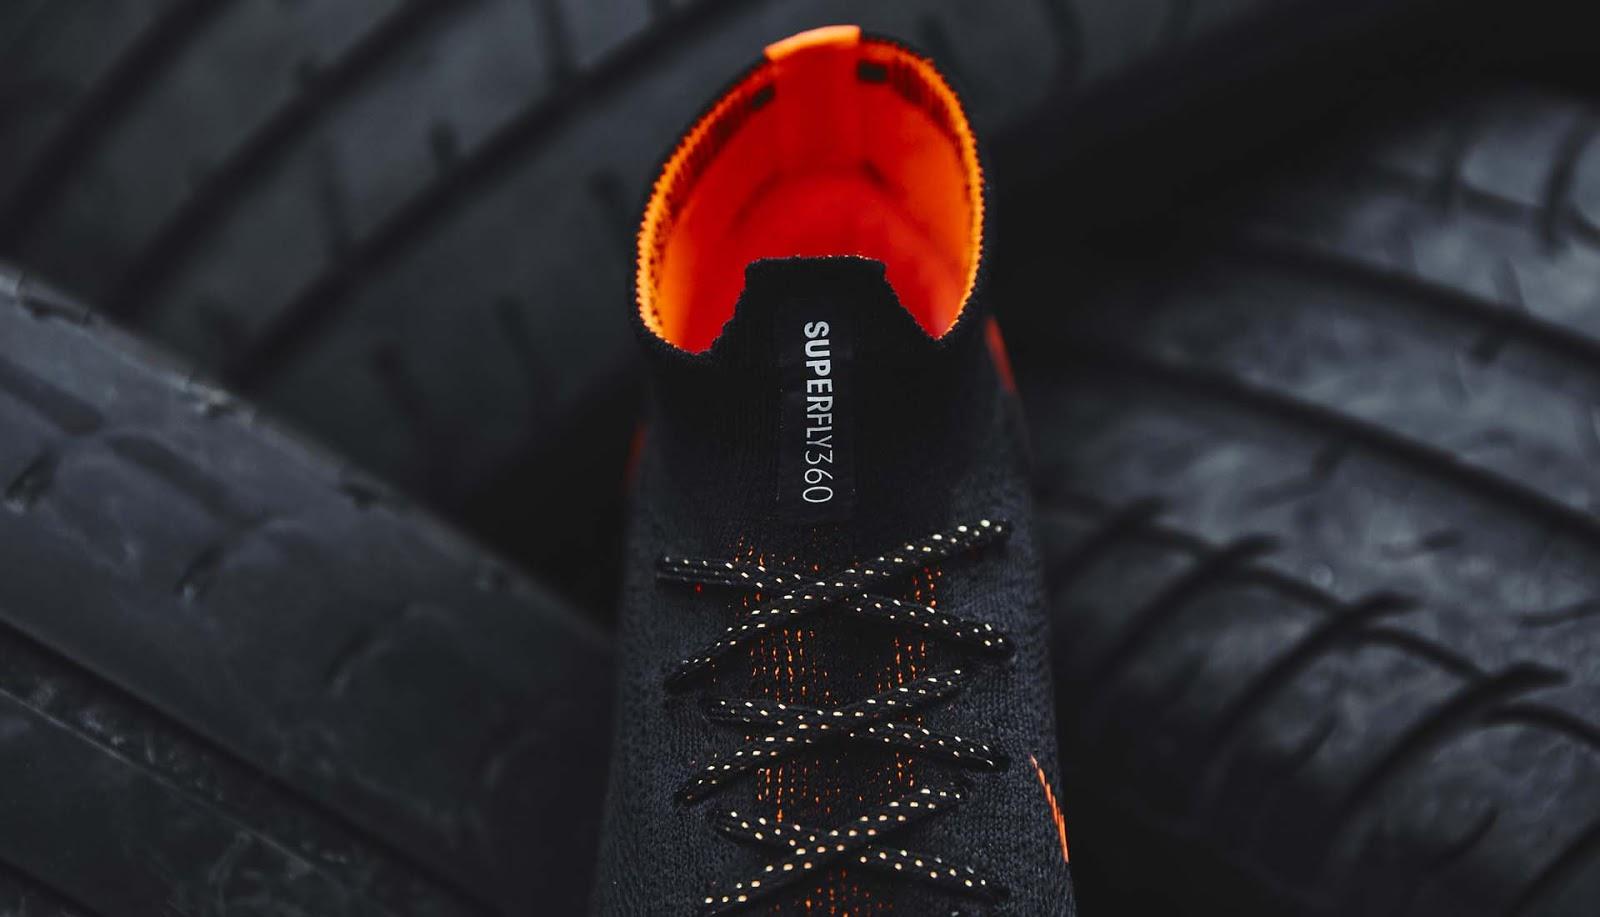 Black Nike Mercurial Superfly VI Elite 2018 Boots Released